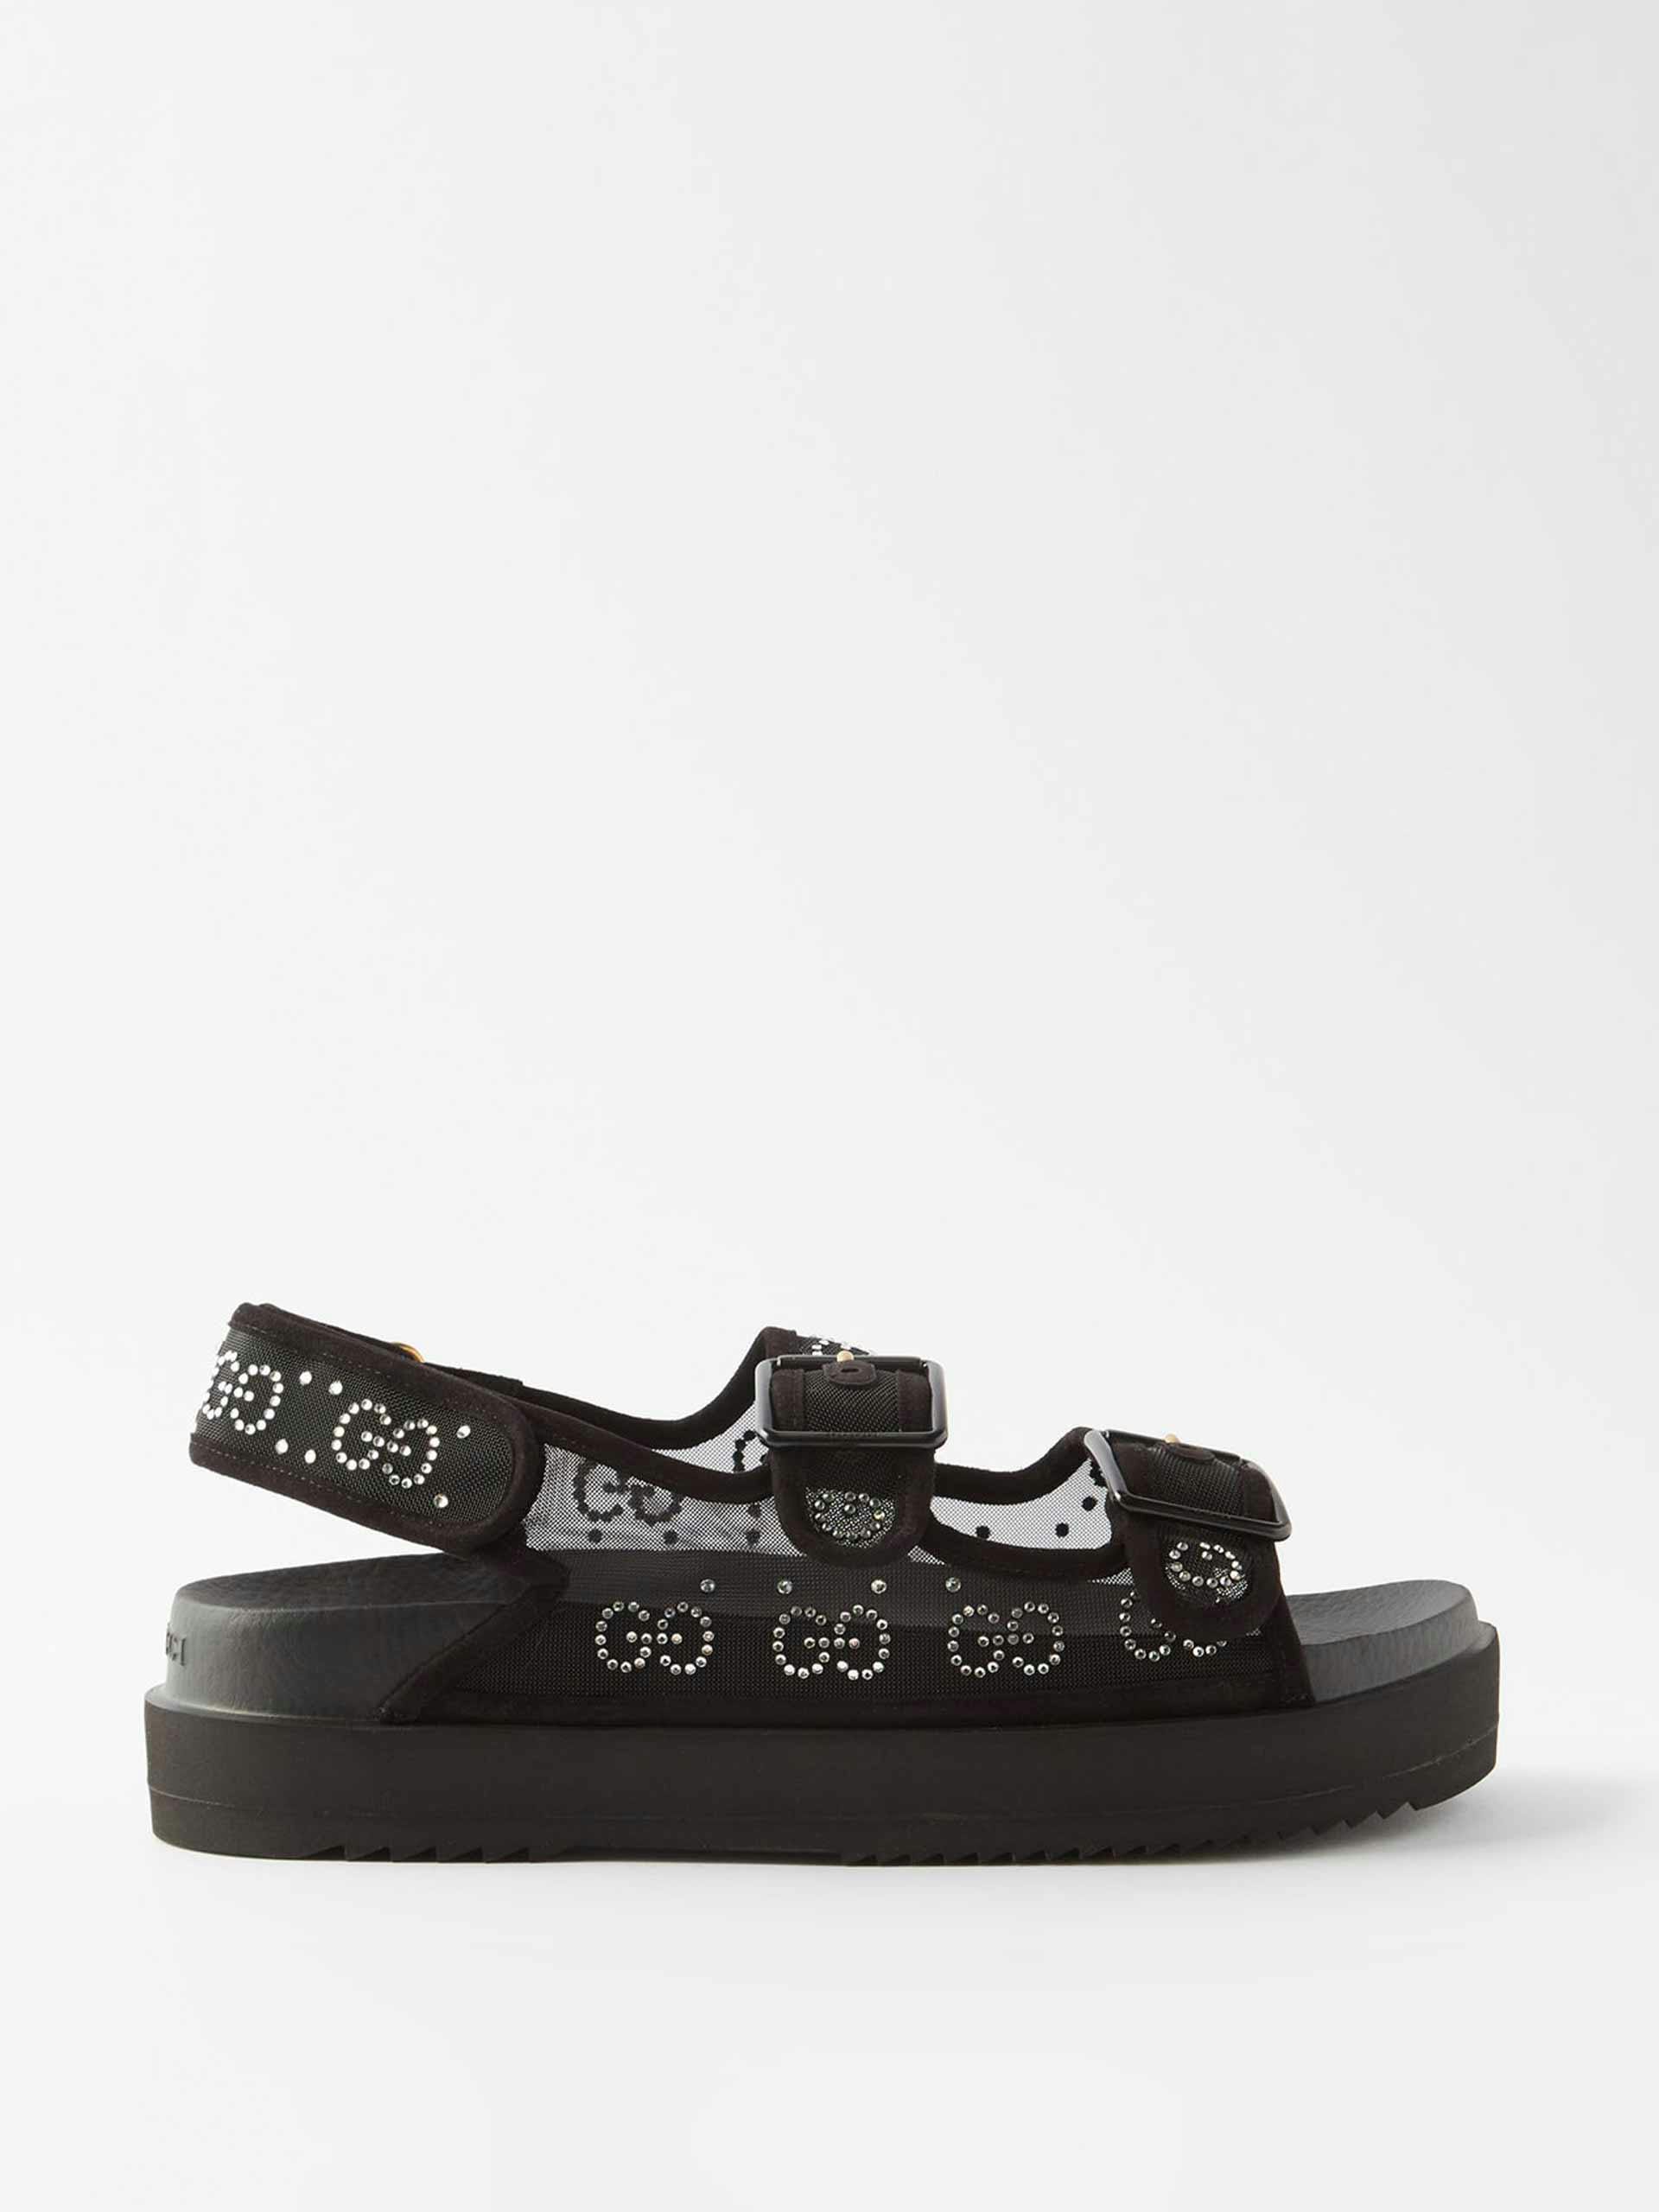 Crystal-embellished black sandals